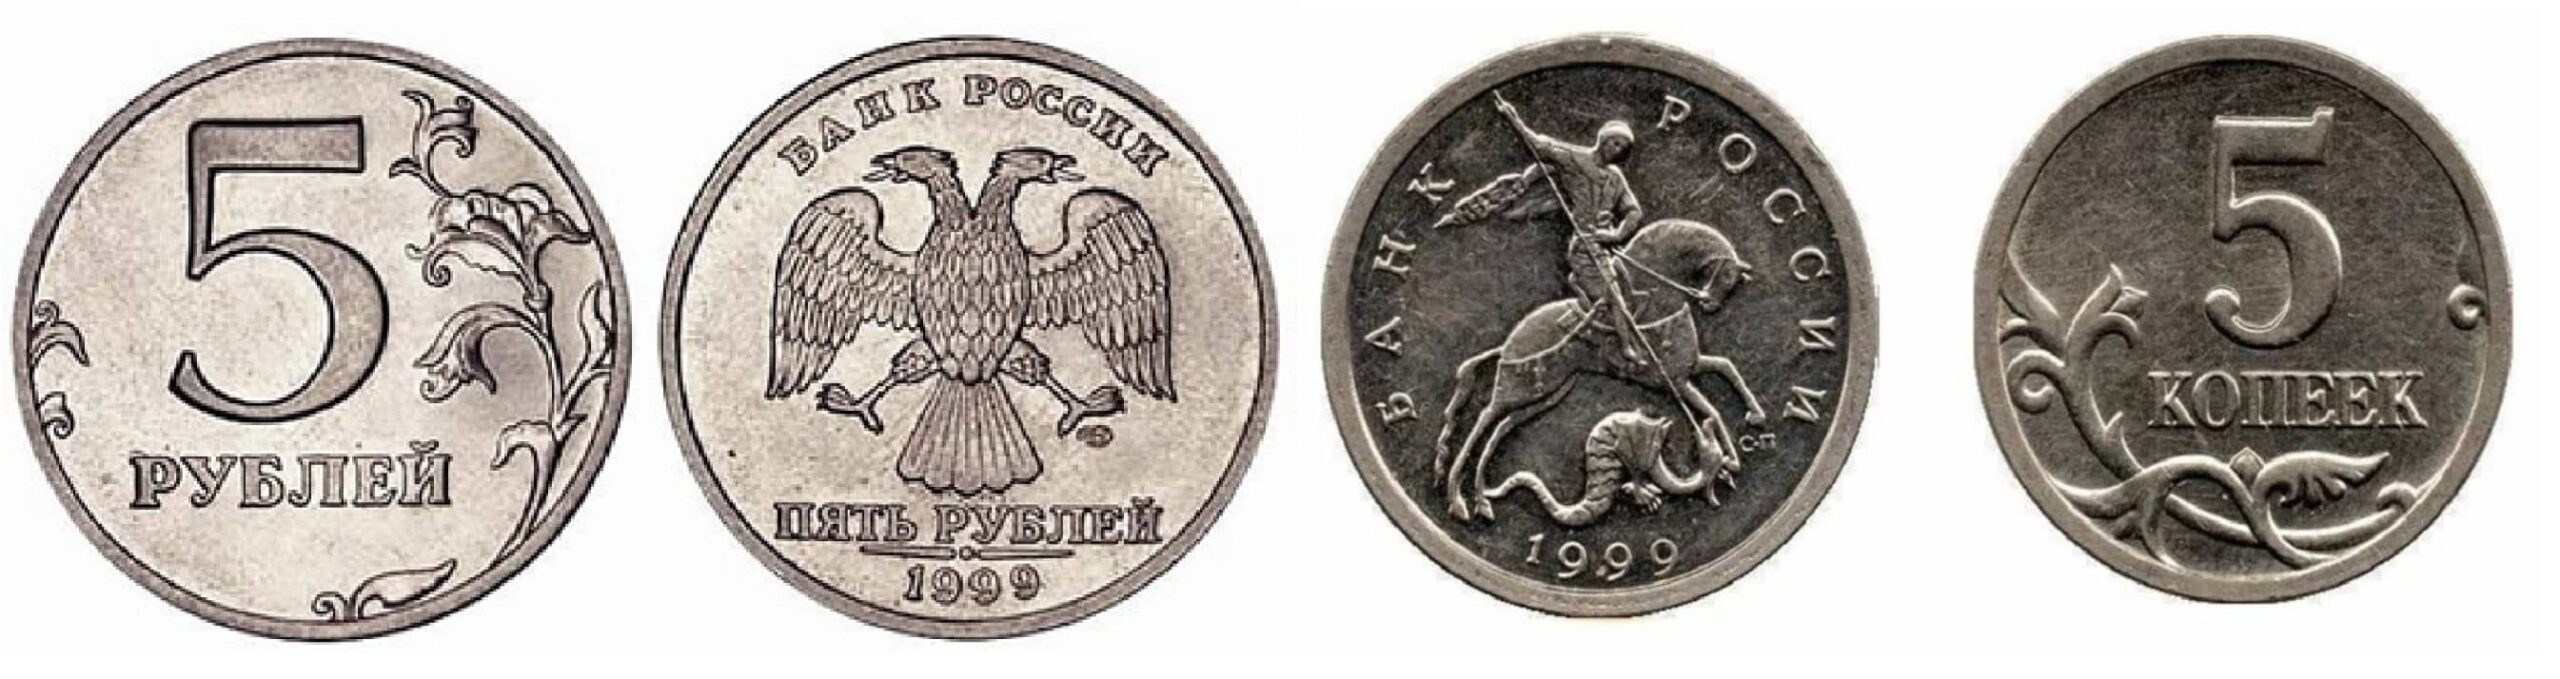 1999 год 5 рублей монеты. 5 Копеек 1999. Привидение монета. Польша 2 гроша 1999 год - герб.